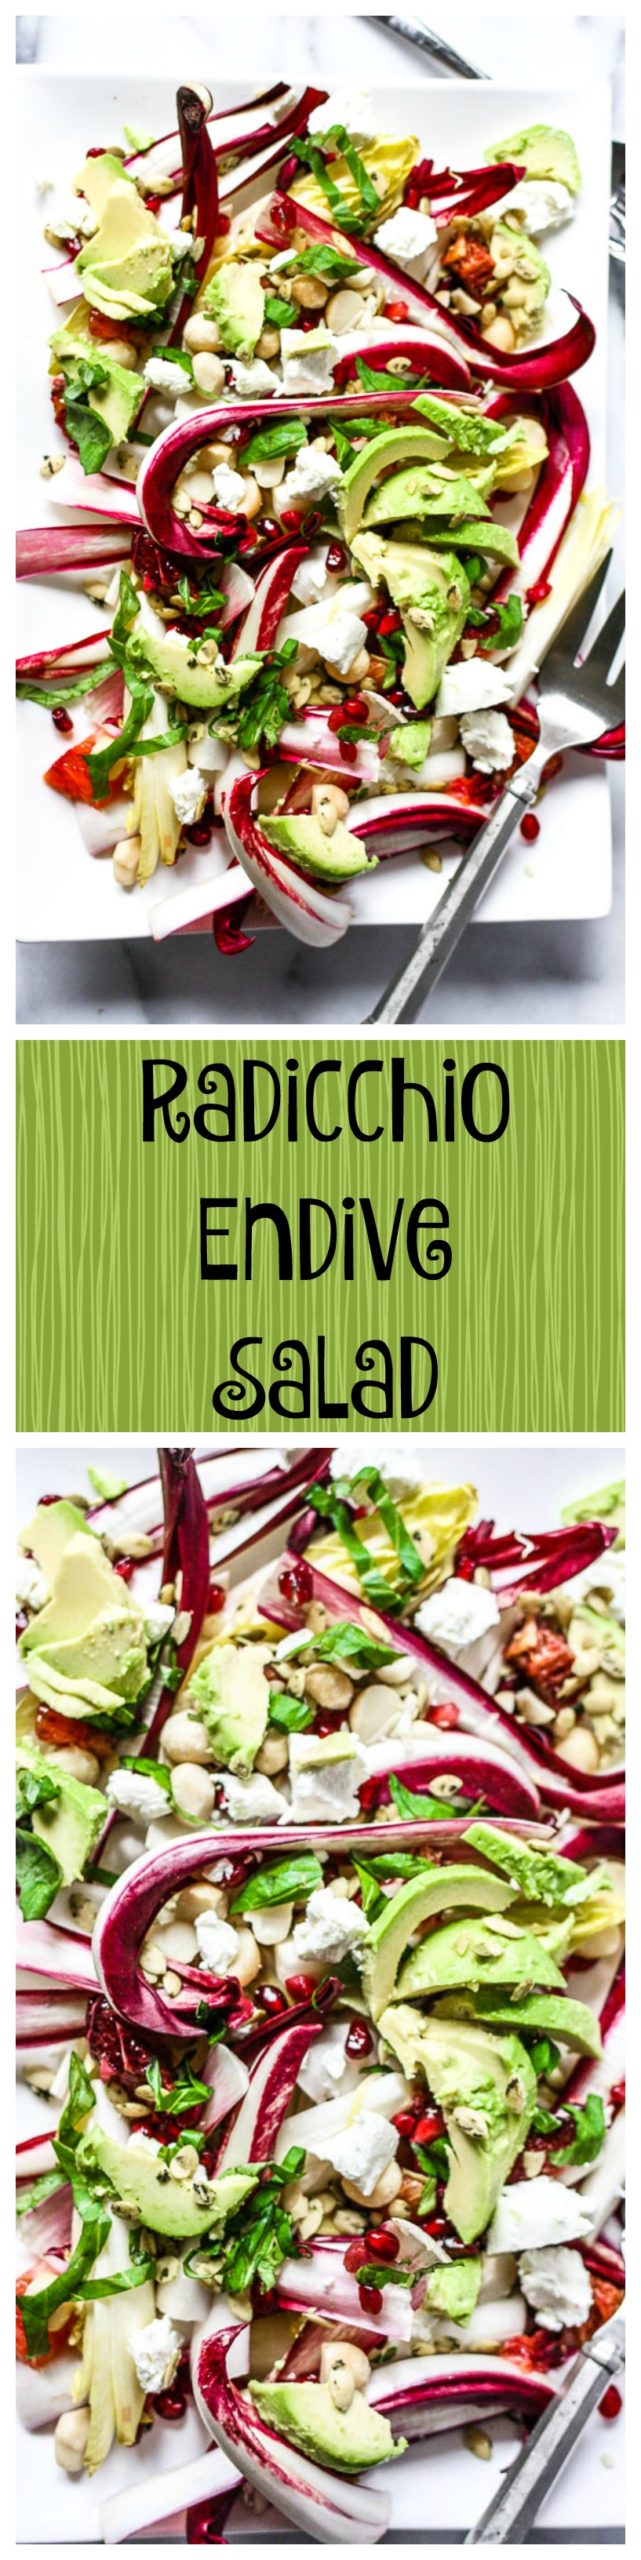 radicchio endive salad